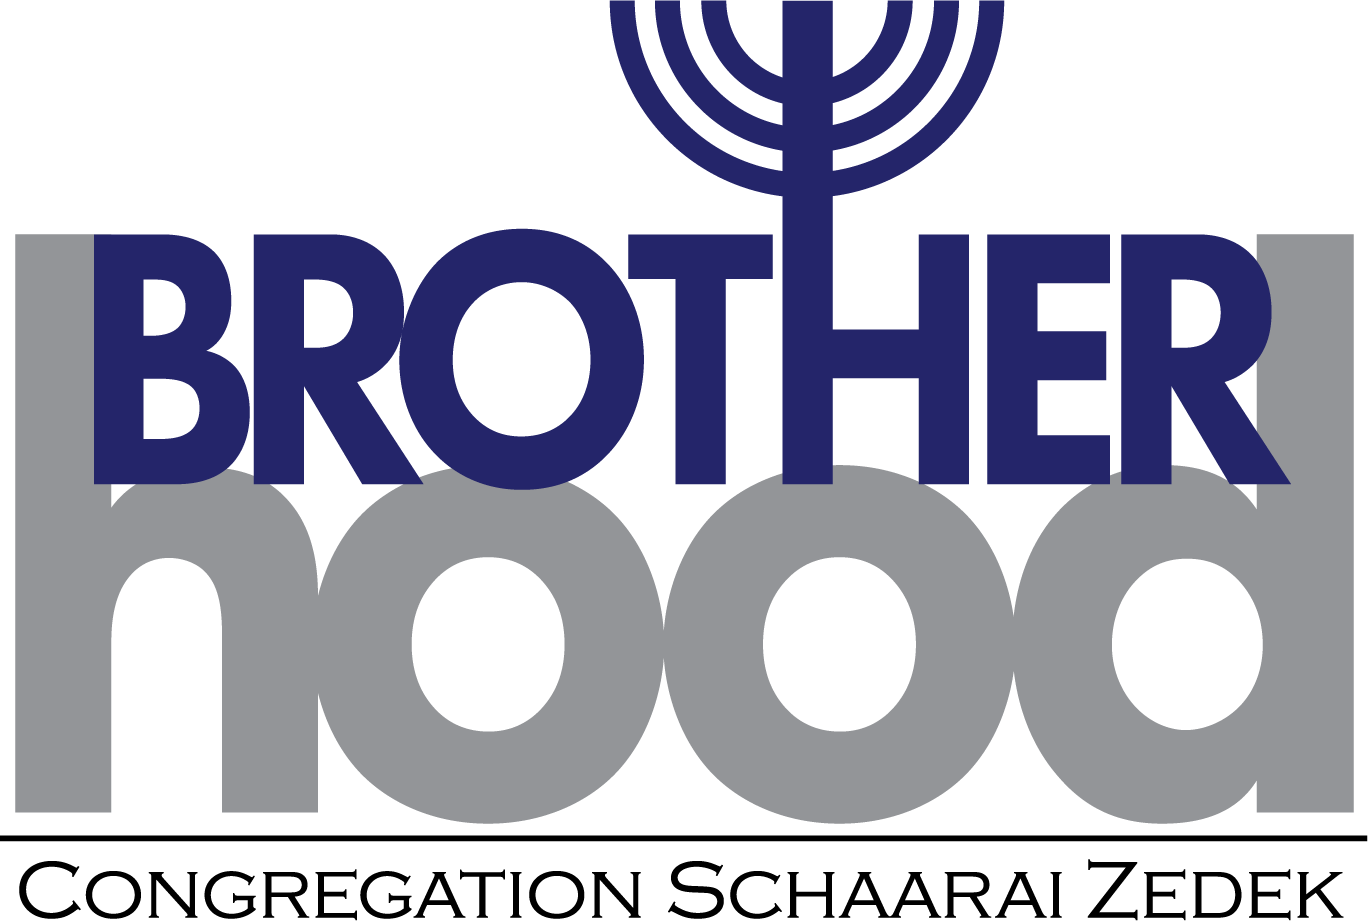 Brotherhood Board Meeting